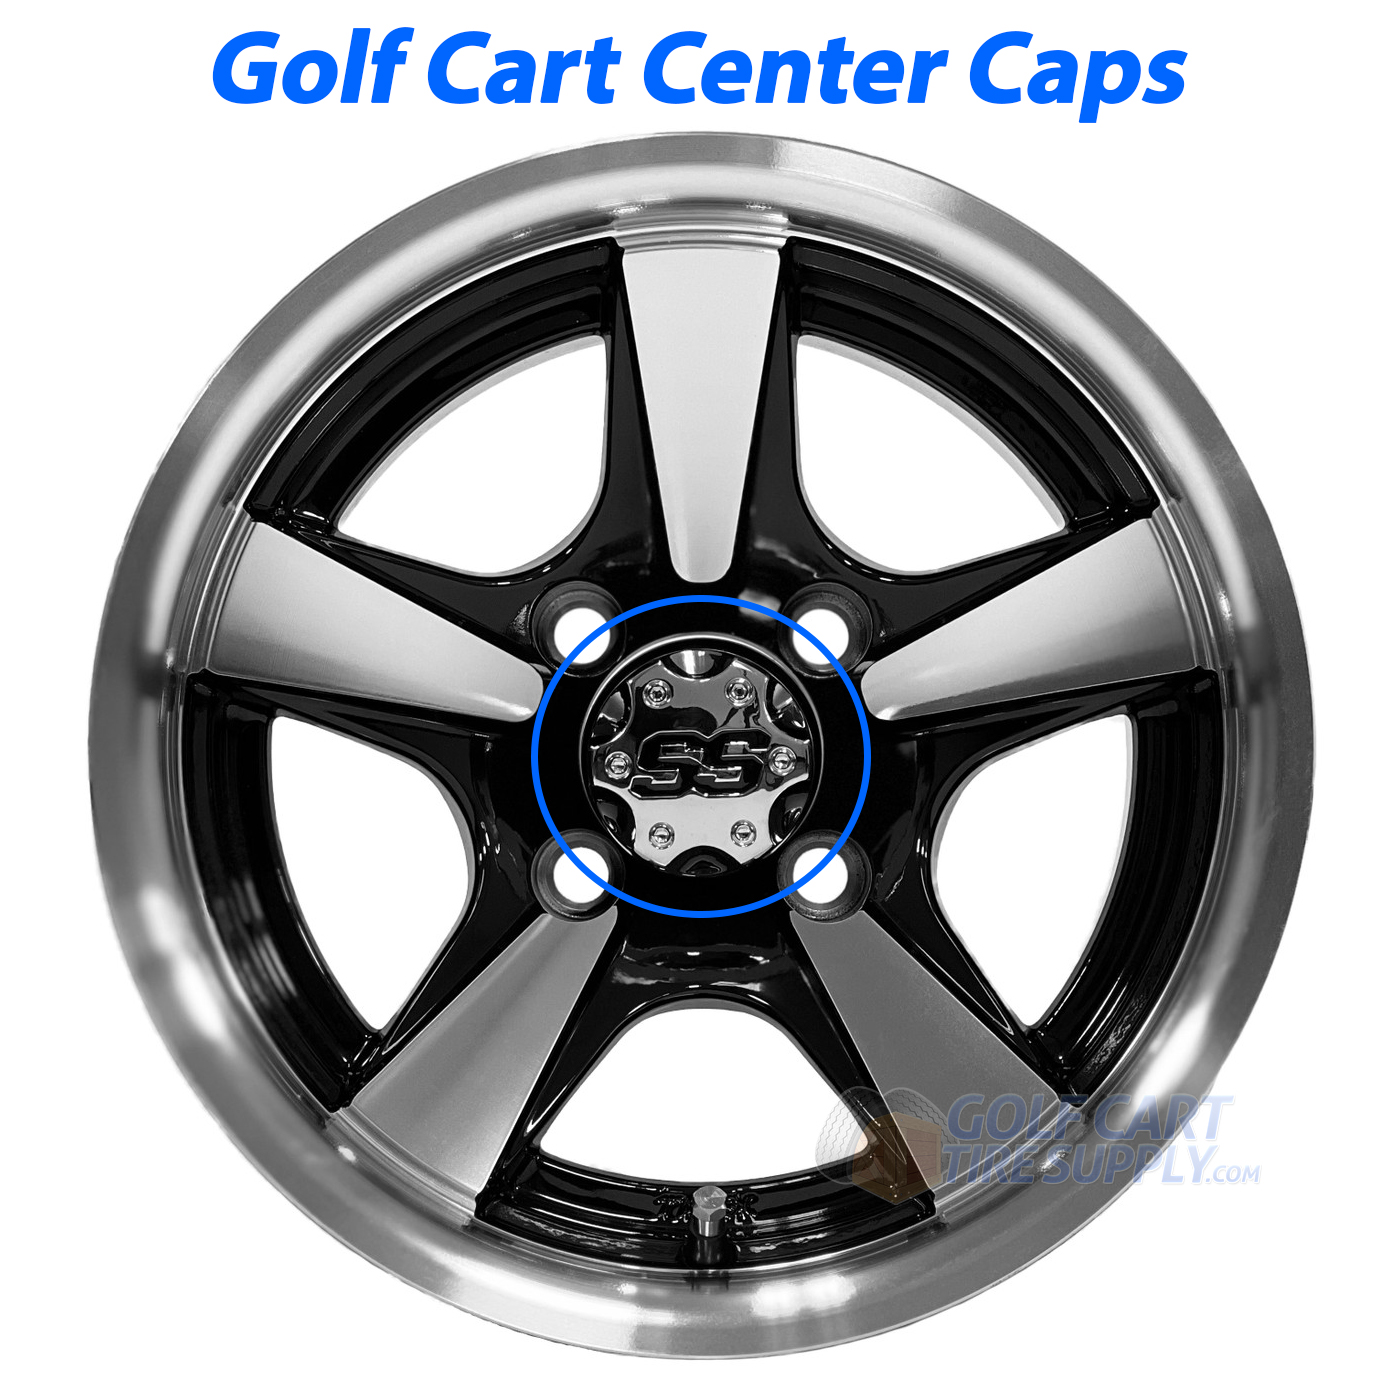 golf-cart-center-caps-gcts-01.jpg